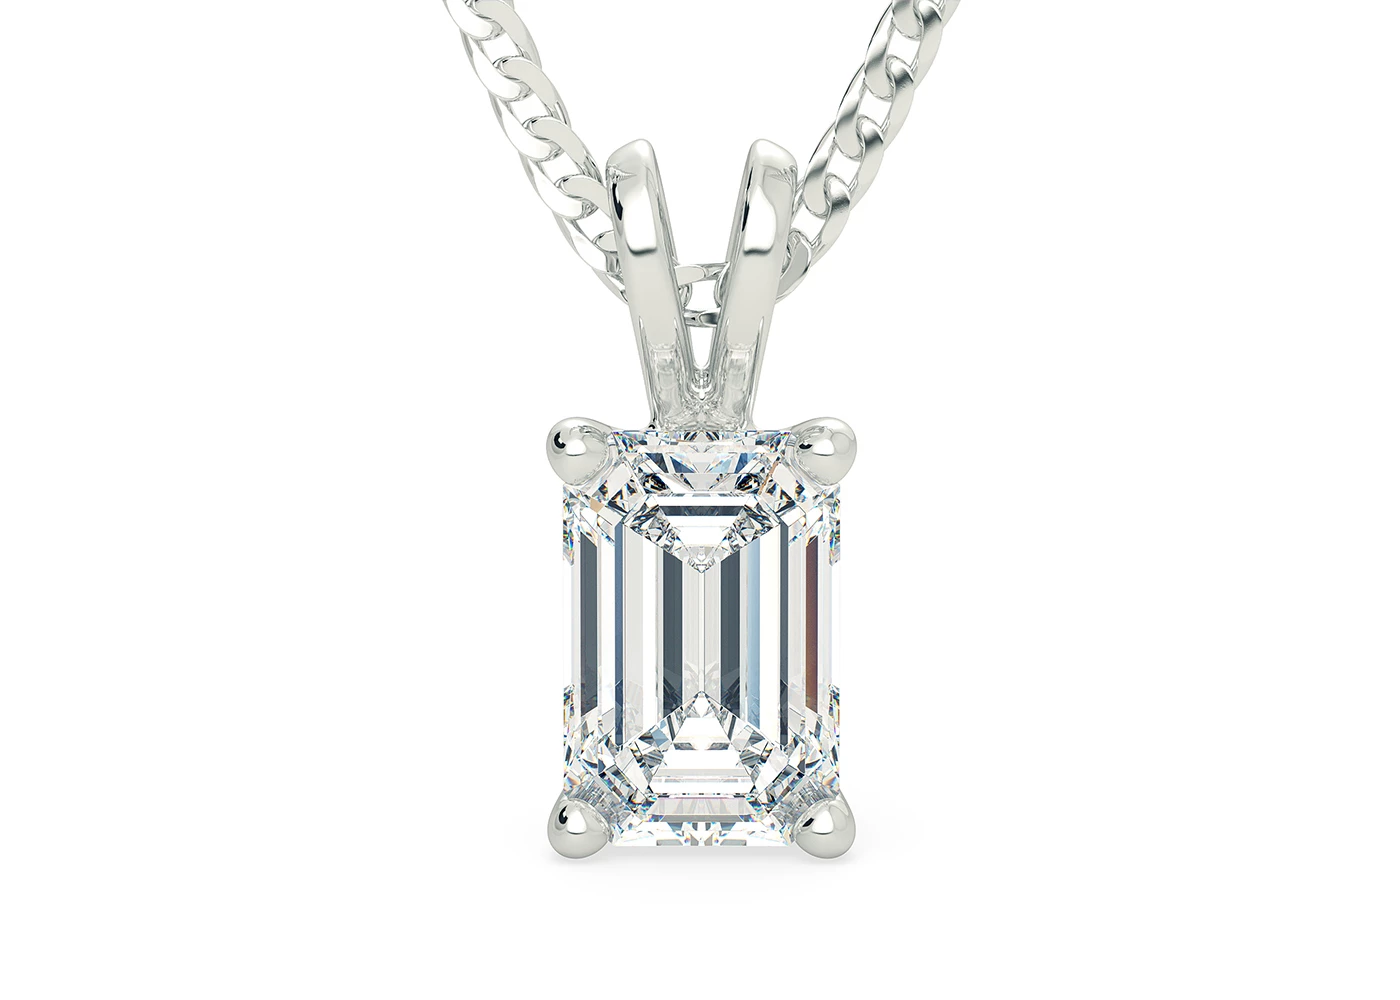 Two Carat Emerald Diamond Pendant in Platinum 950